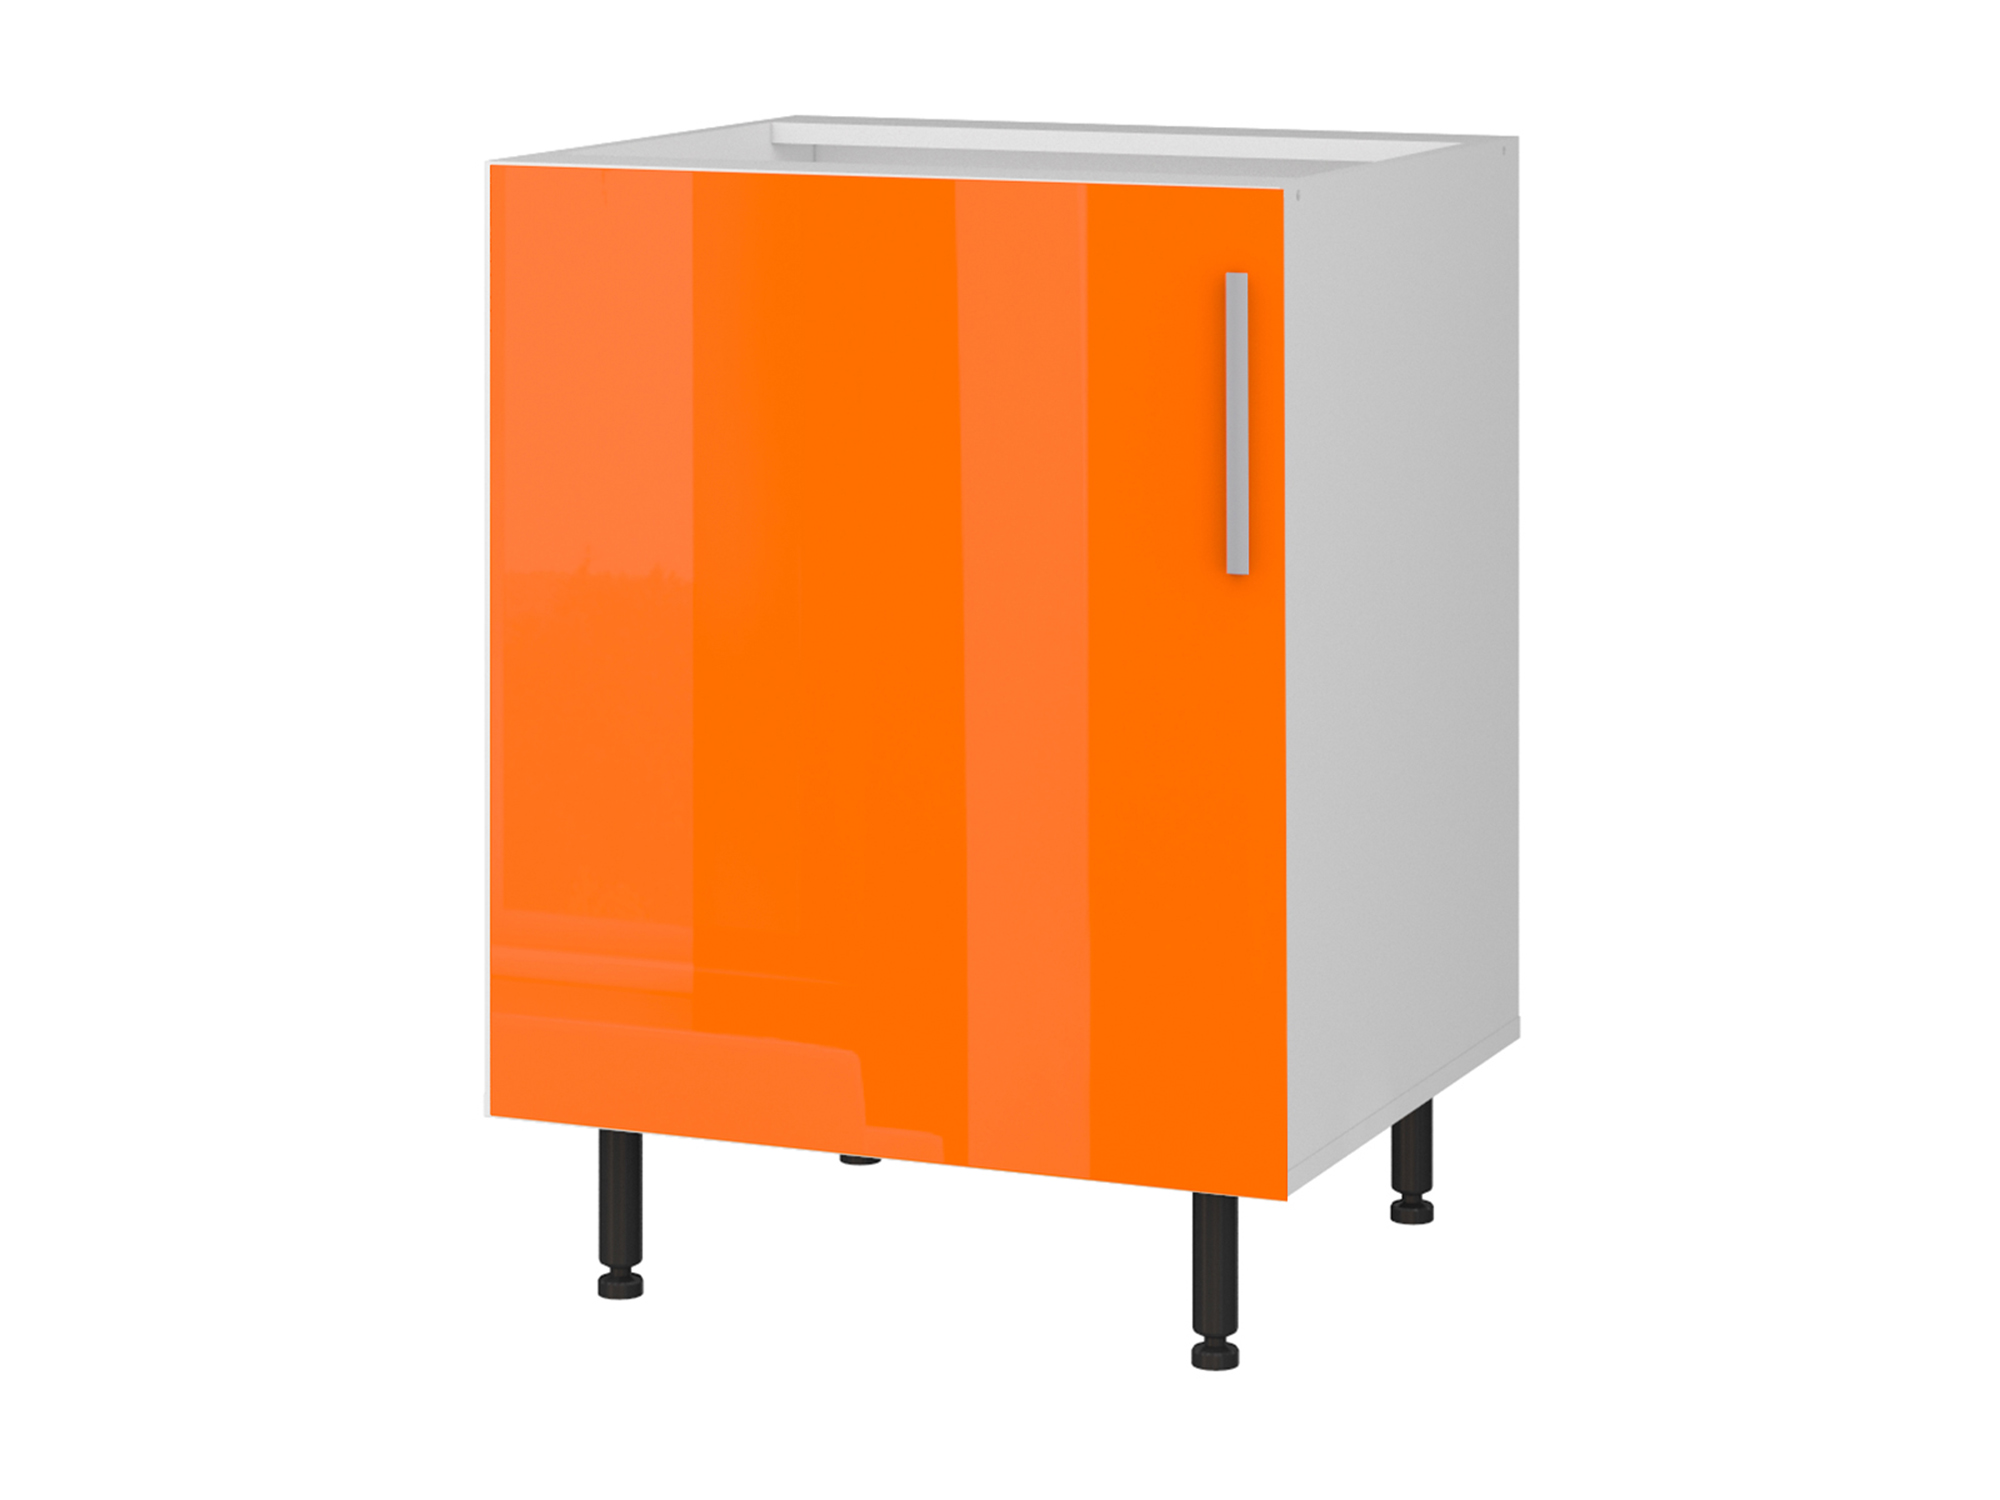 Шкаф напольный однодверный Хелена 60 см Оранжевый, Белый, МДФ, Пленка ПВХ, ЛДСП шкаф напольный двухдверный хелена 80 см оранжевый белый мдф пленка пвх лдсп